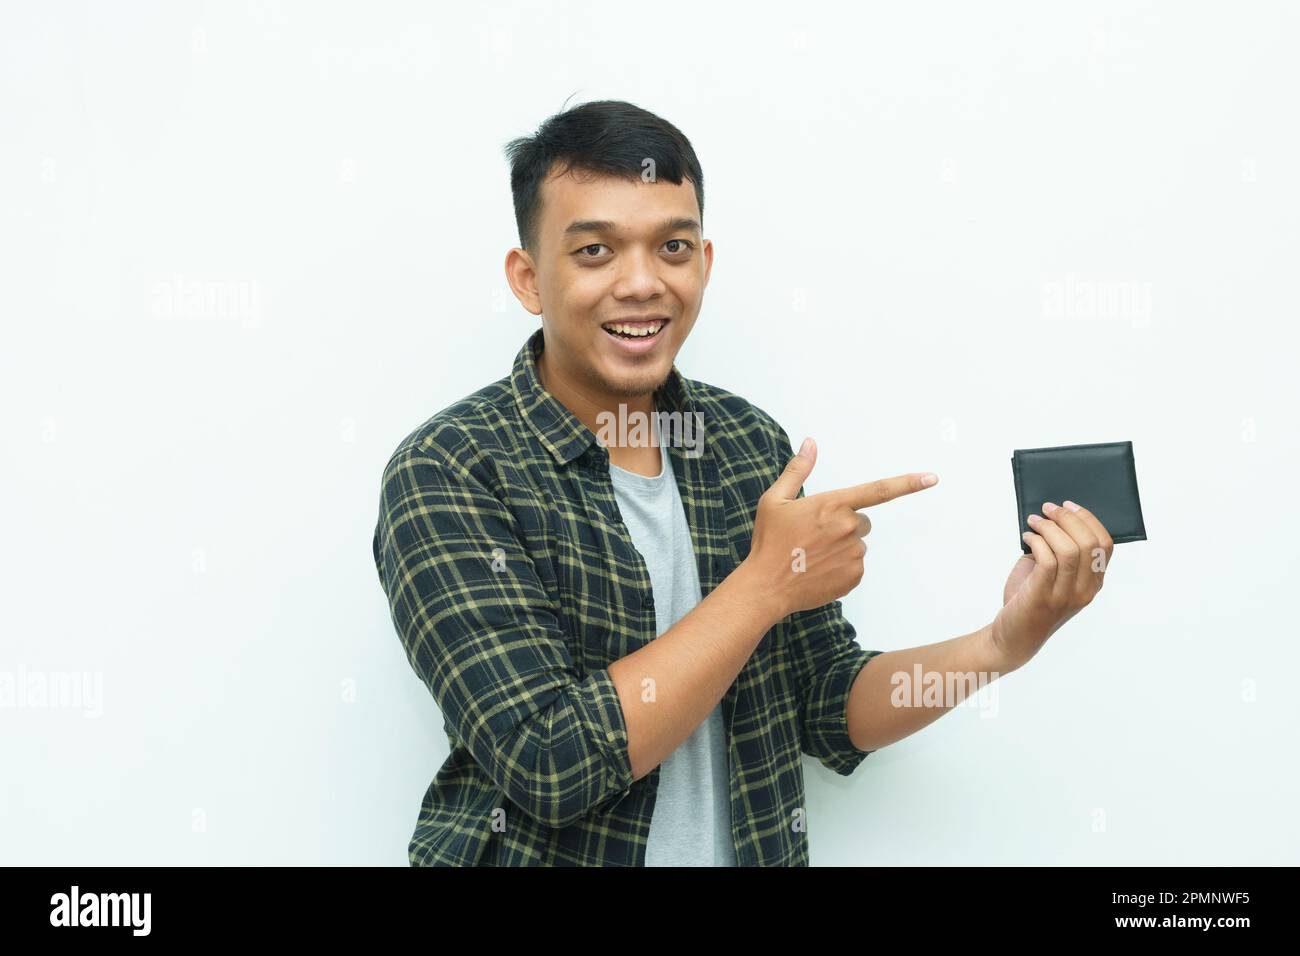 Ein junger asiatischer Mann, der lächelt, während er auf die schwarze Brieftasche zeigt Stockfoto